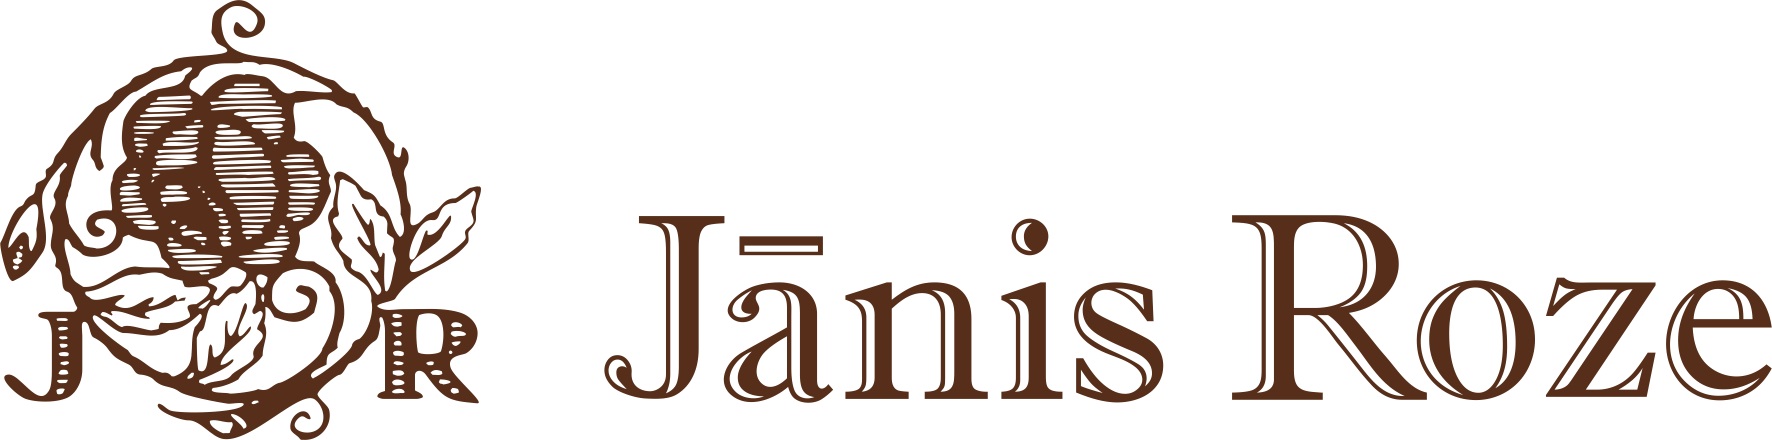 Jānis Roze logo